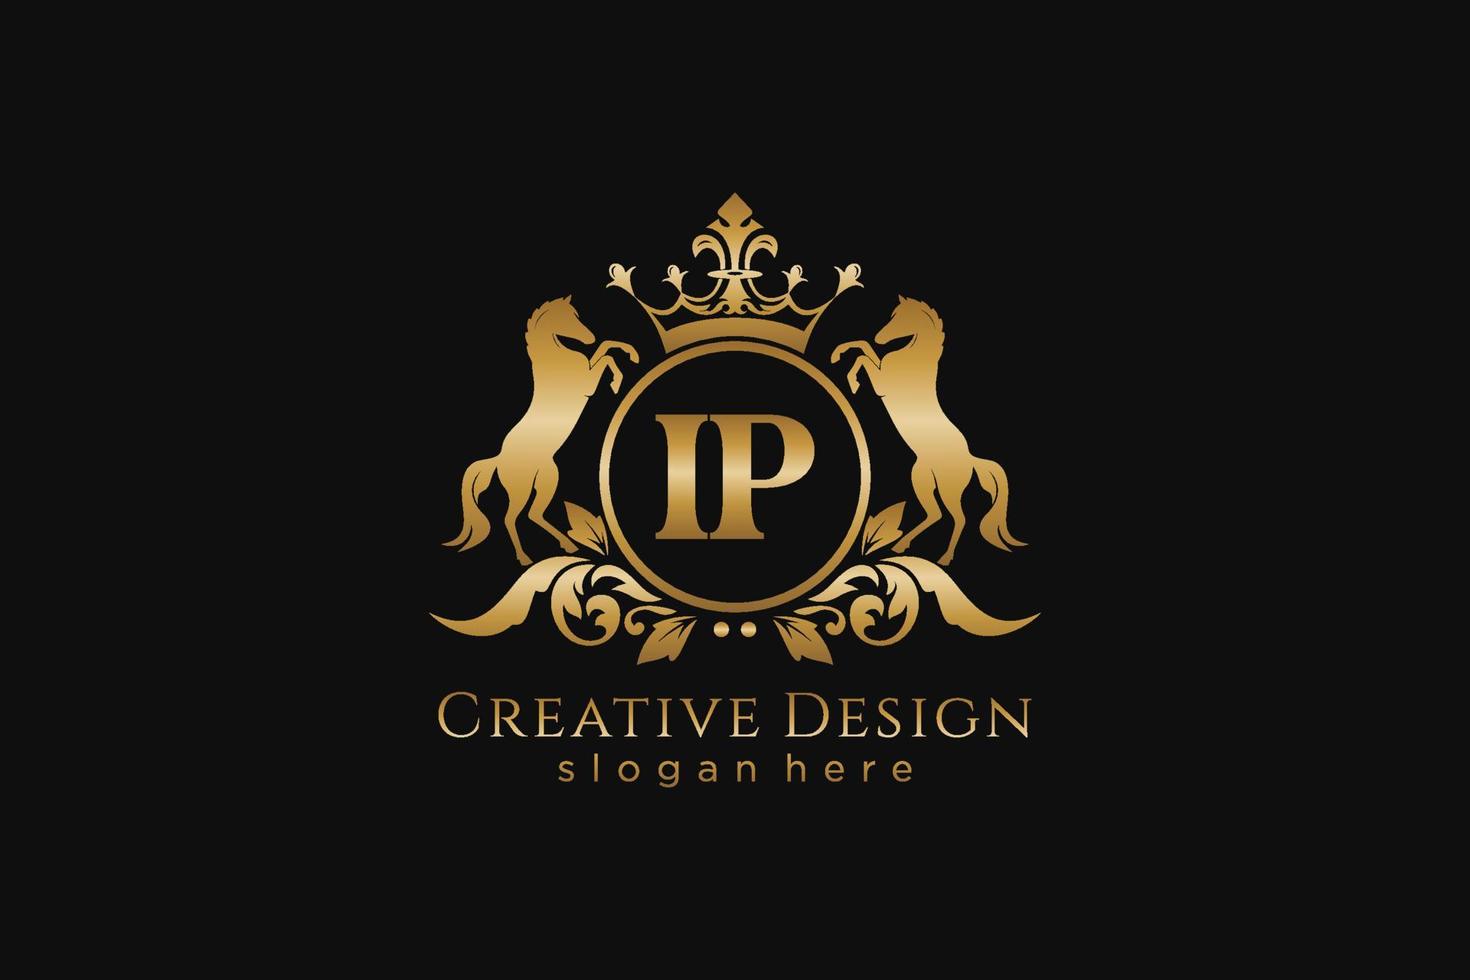 cresta de oro retro ip inicial con círculo y dos caballos, plantilla de insignia con pergaminos y corona real - perfecto para proyectos de marca de lujo vector